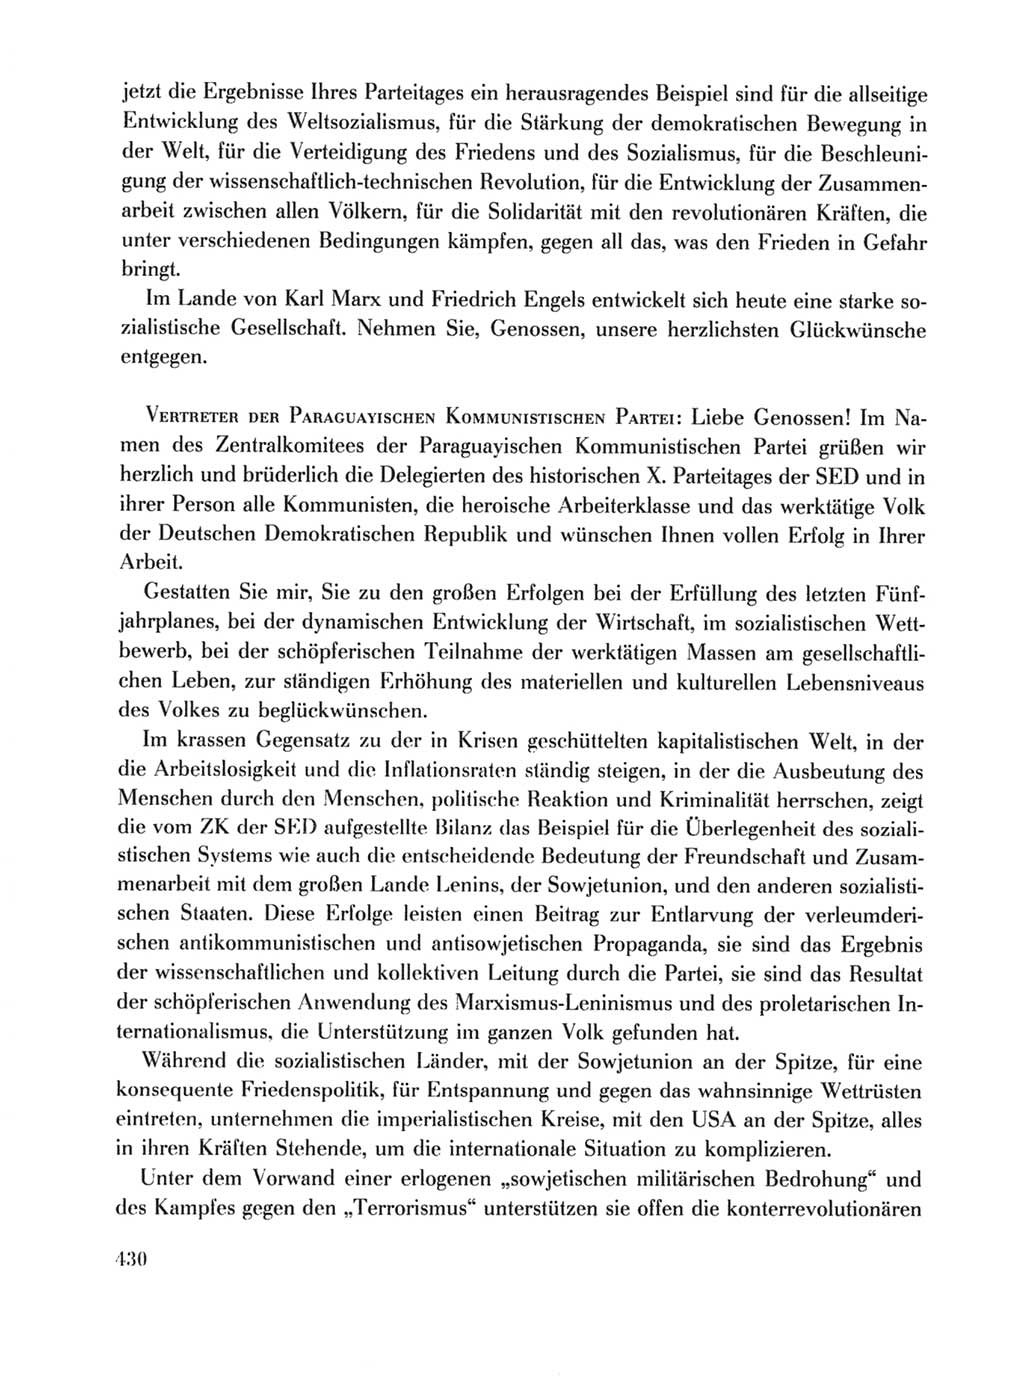 Protokoll der Verhandlungen des Ⅹ. Parteitages der Sozialistischen Einheitspartei Deutschlands (SED) [Deutsche Demokratische Republik (DDR)] 1981, Band 1, Seite 430 (Prot. Verh. Ⅹ. PT SED DDR 1981, Bd. 1, S. 430)